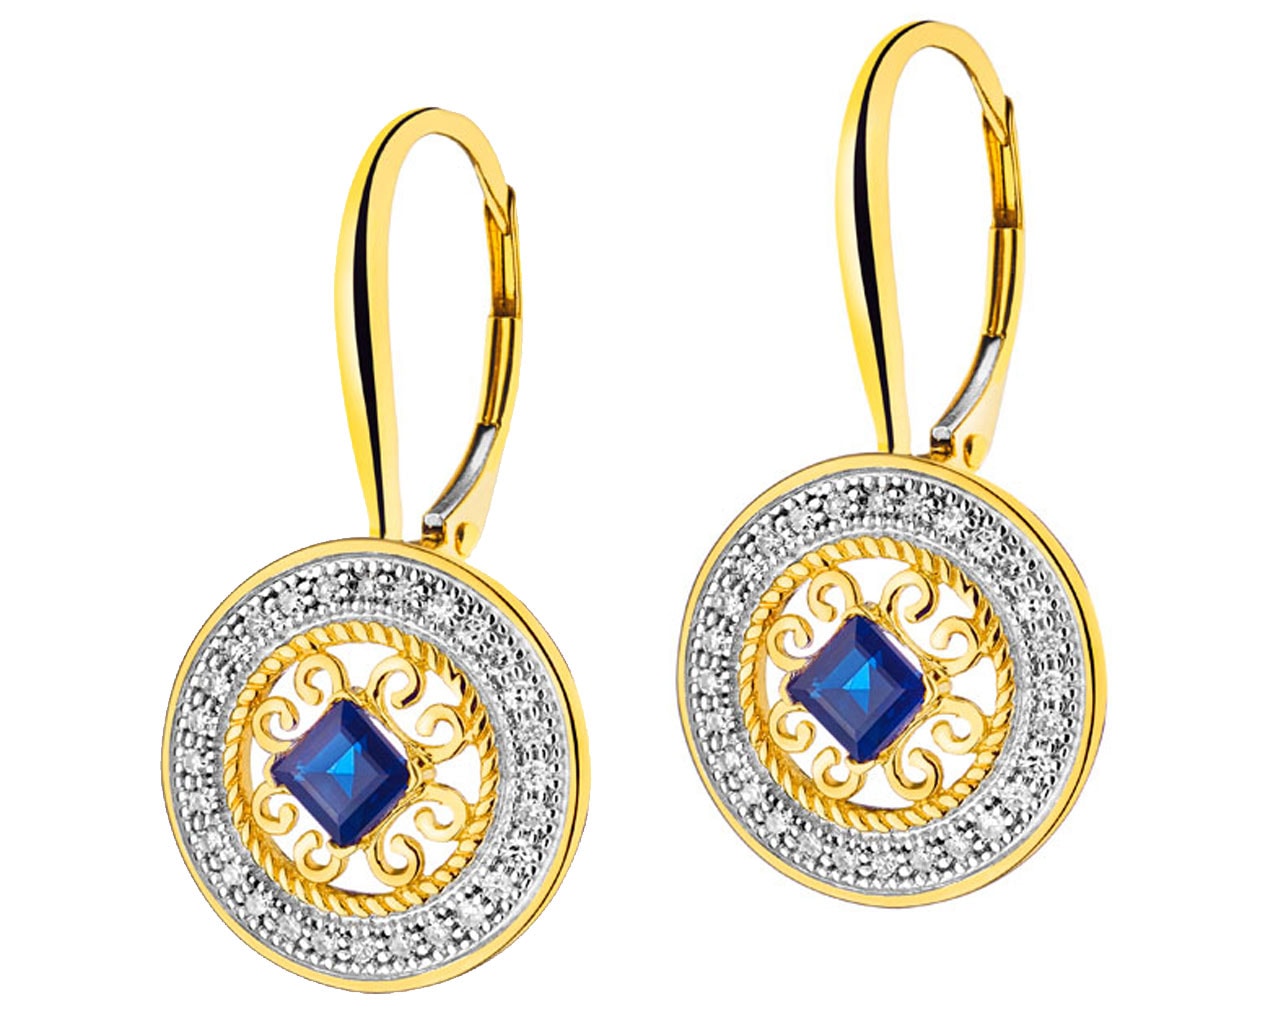 Zlaté náušnice s diamanty a safíry - rozety 0,15 ct - ryzost 585